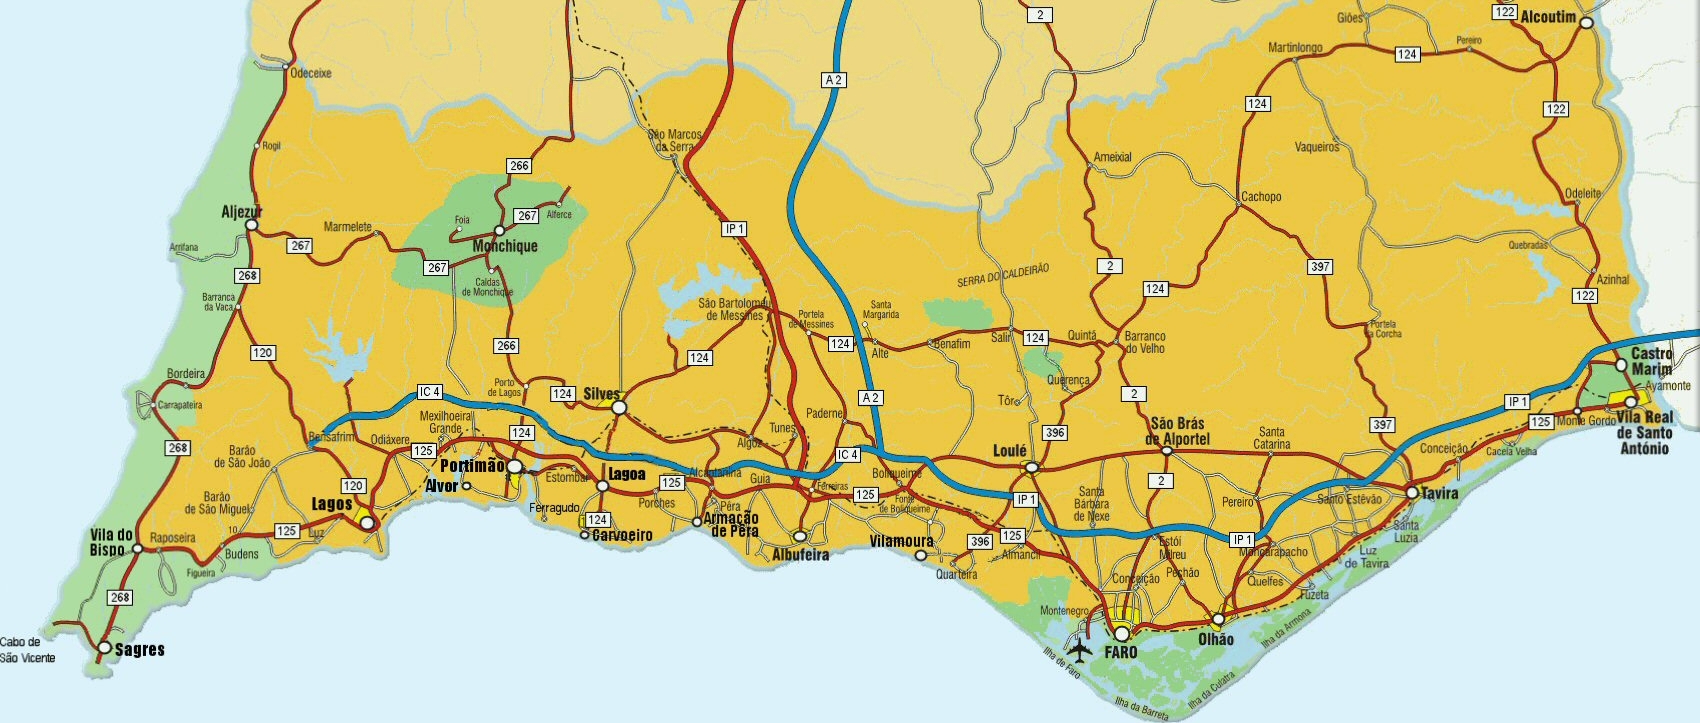 Algarve Main Route Map